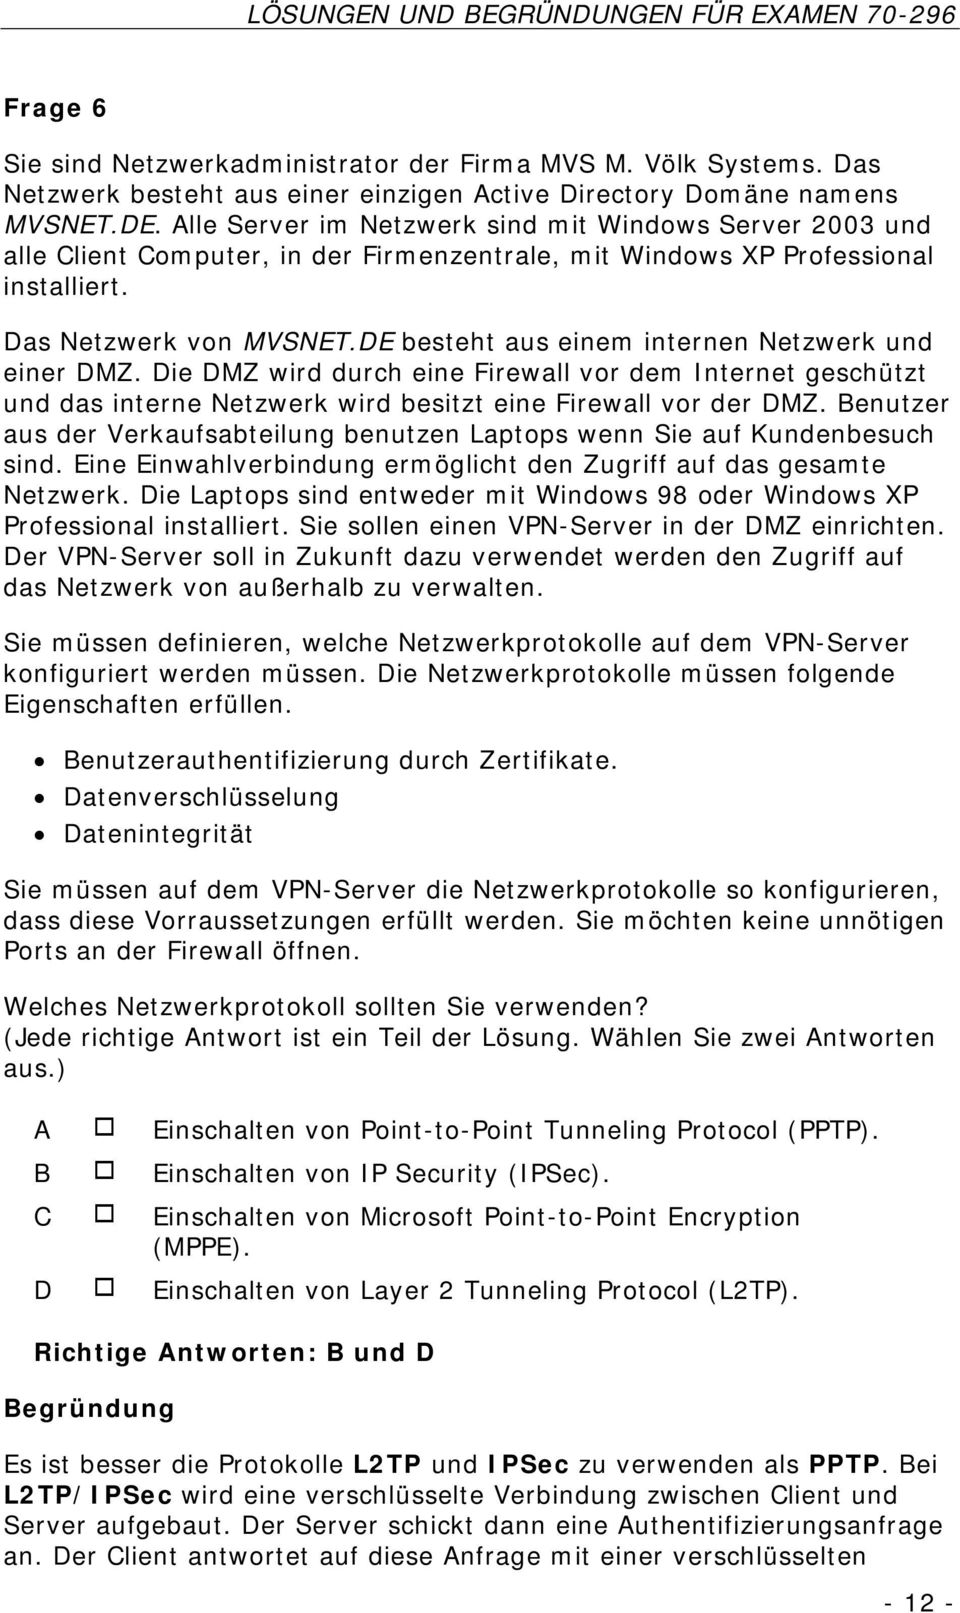 DE besteht aus einem internen Netzwerk und einer DMZ. Die DMZ wird durch eine Firewall vor dem Internet geschützt und das interne Netzwerk wird besitzt eine Firewall vor der DMZ.